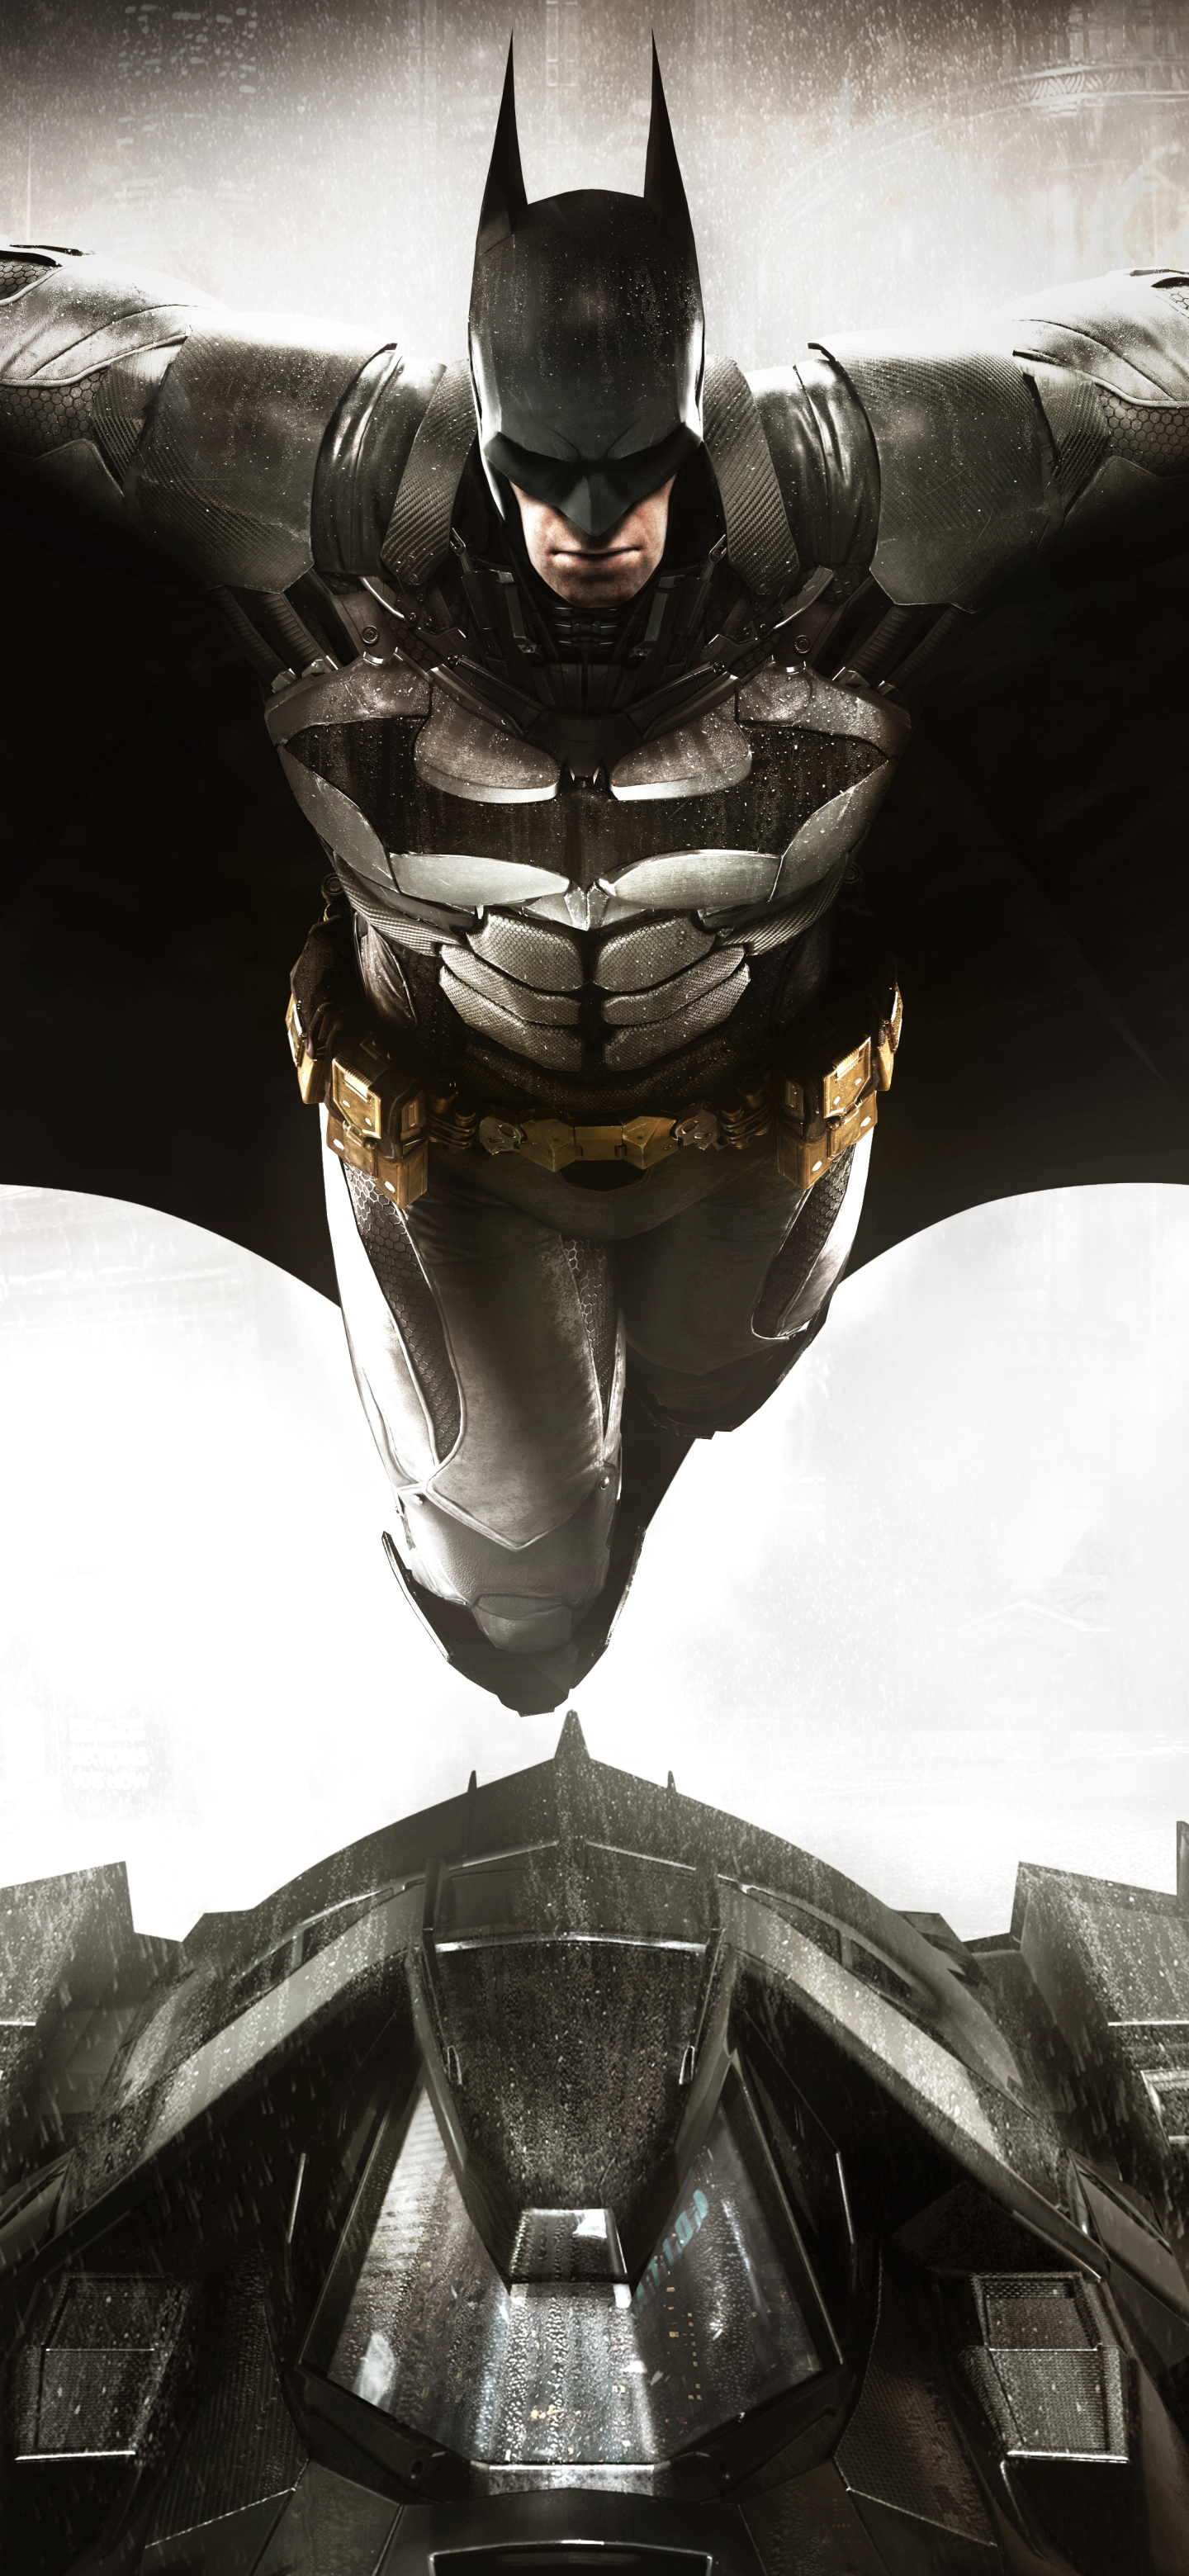 Скачать обои бесплатно Видеоигры, Бэтмен, Комиксы Dc, Бэтмобиль, Batman: Рыцарь Аркхема картинка на рабочий стол ПК